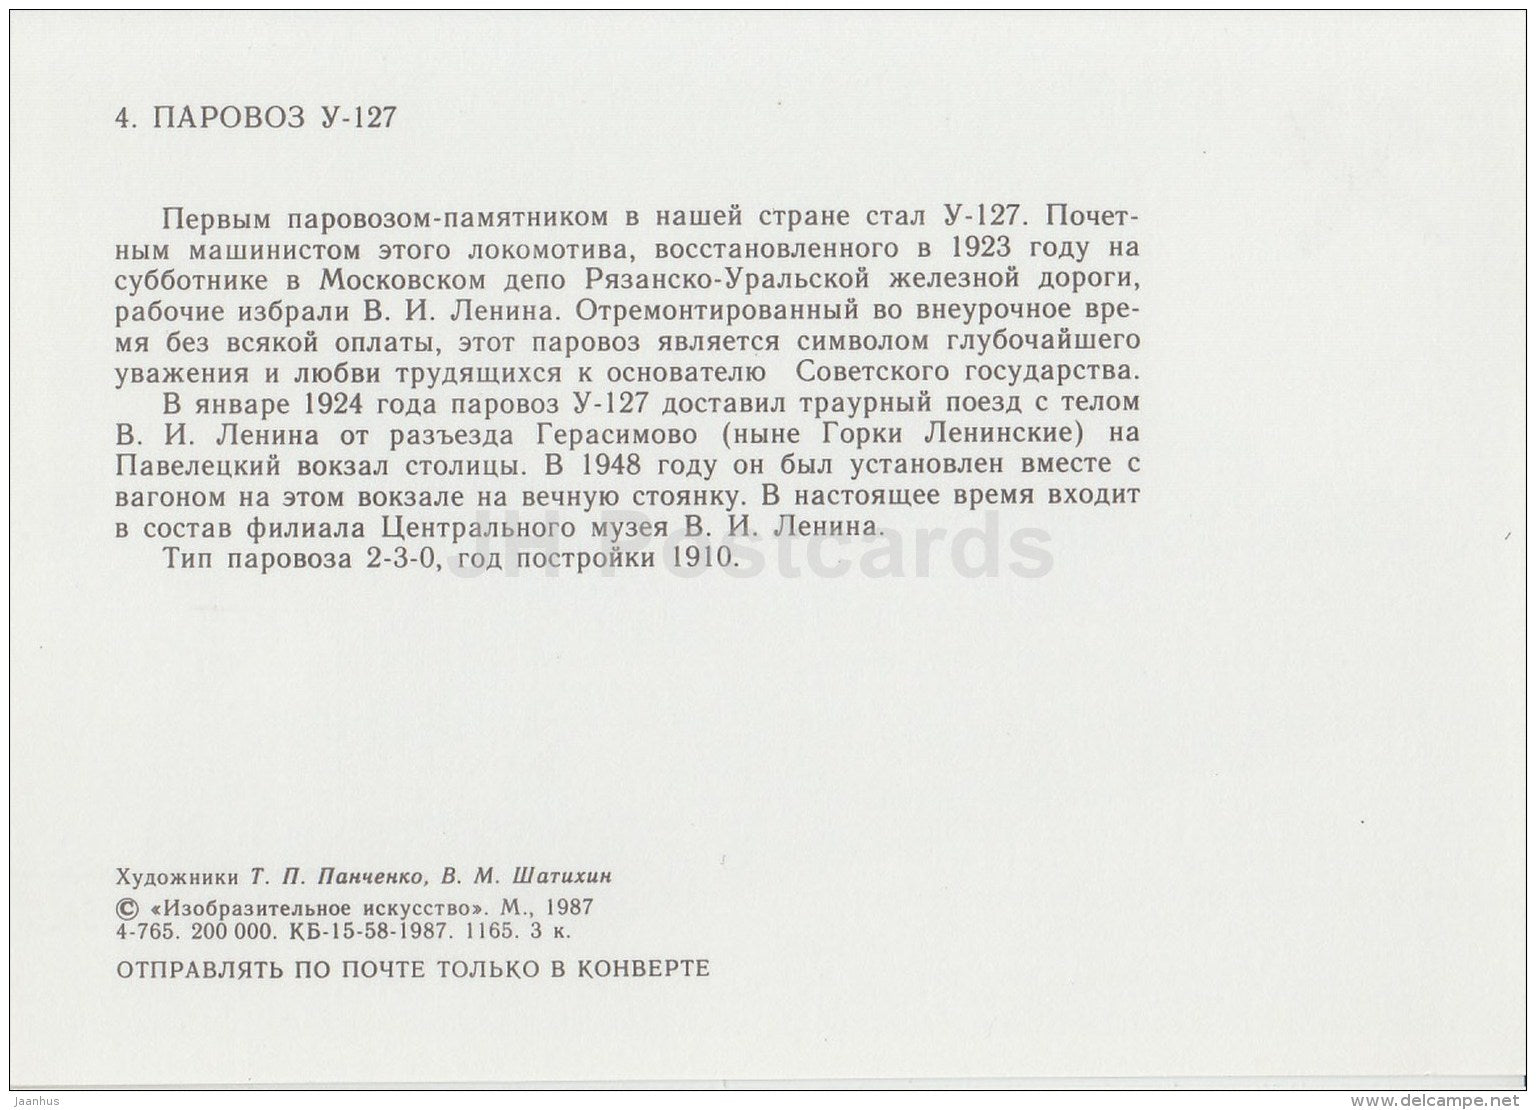 U-127 - locomotive - train - railway - 1987 - Russia USSR - unused - JH Postcards